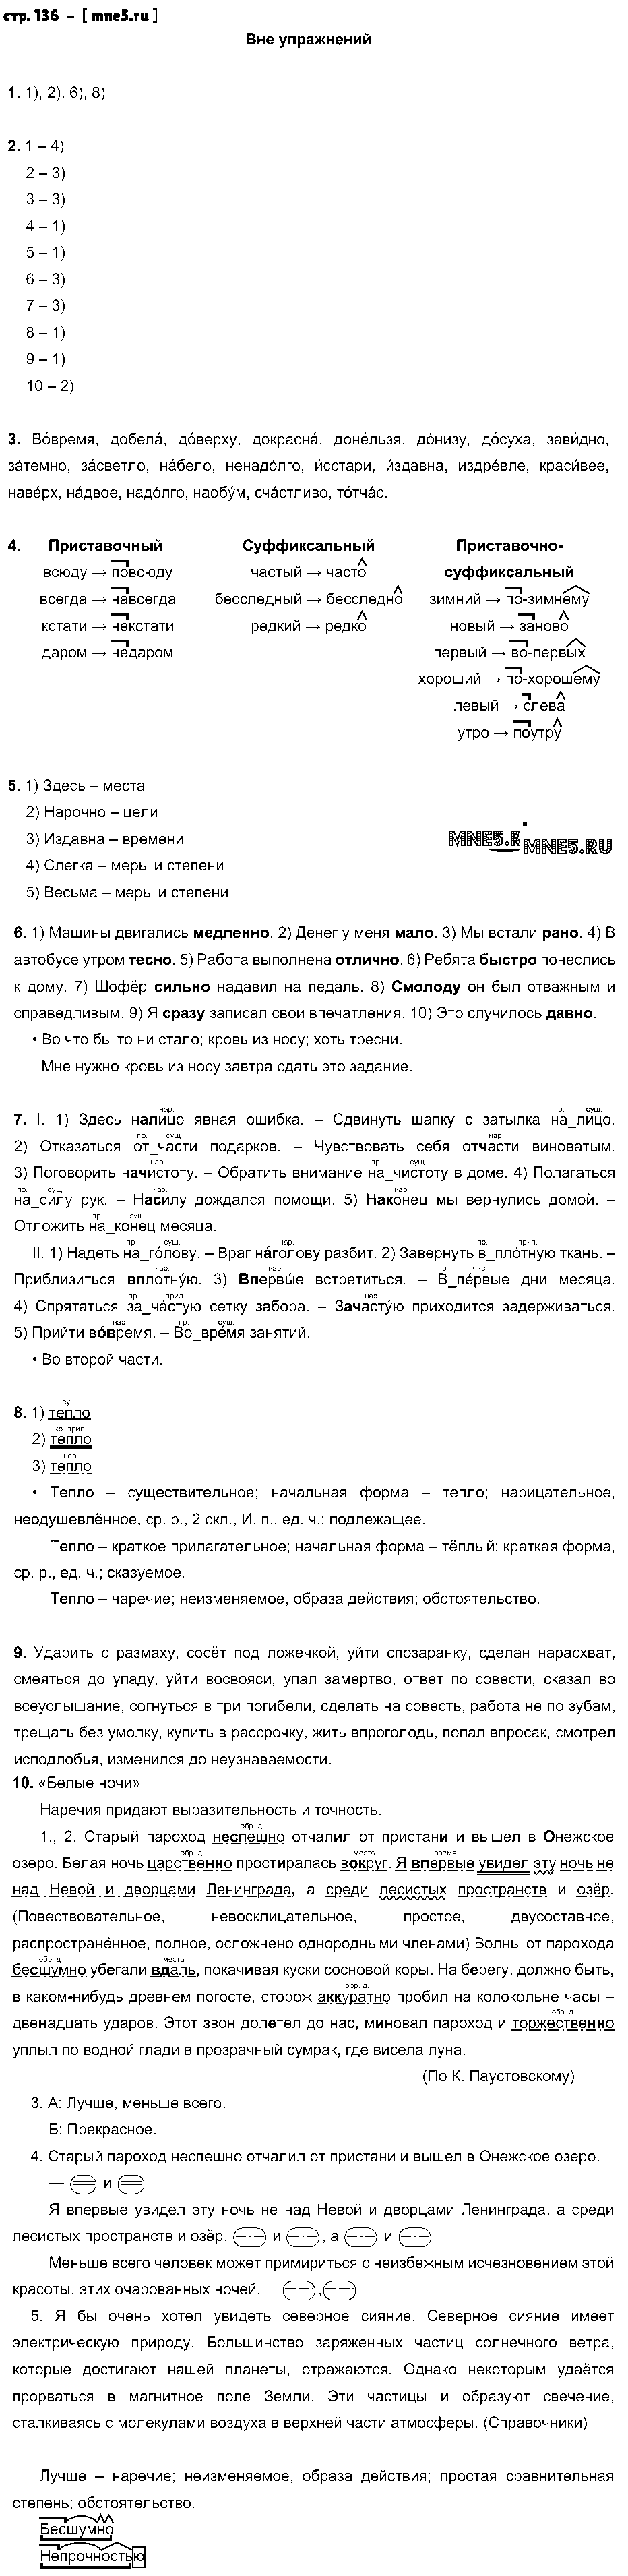 ГДЗ Русский язык 7 класс - стр. 136